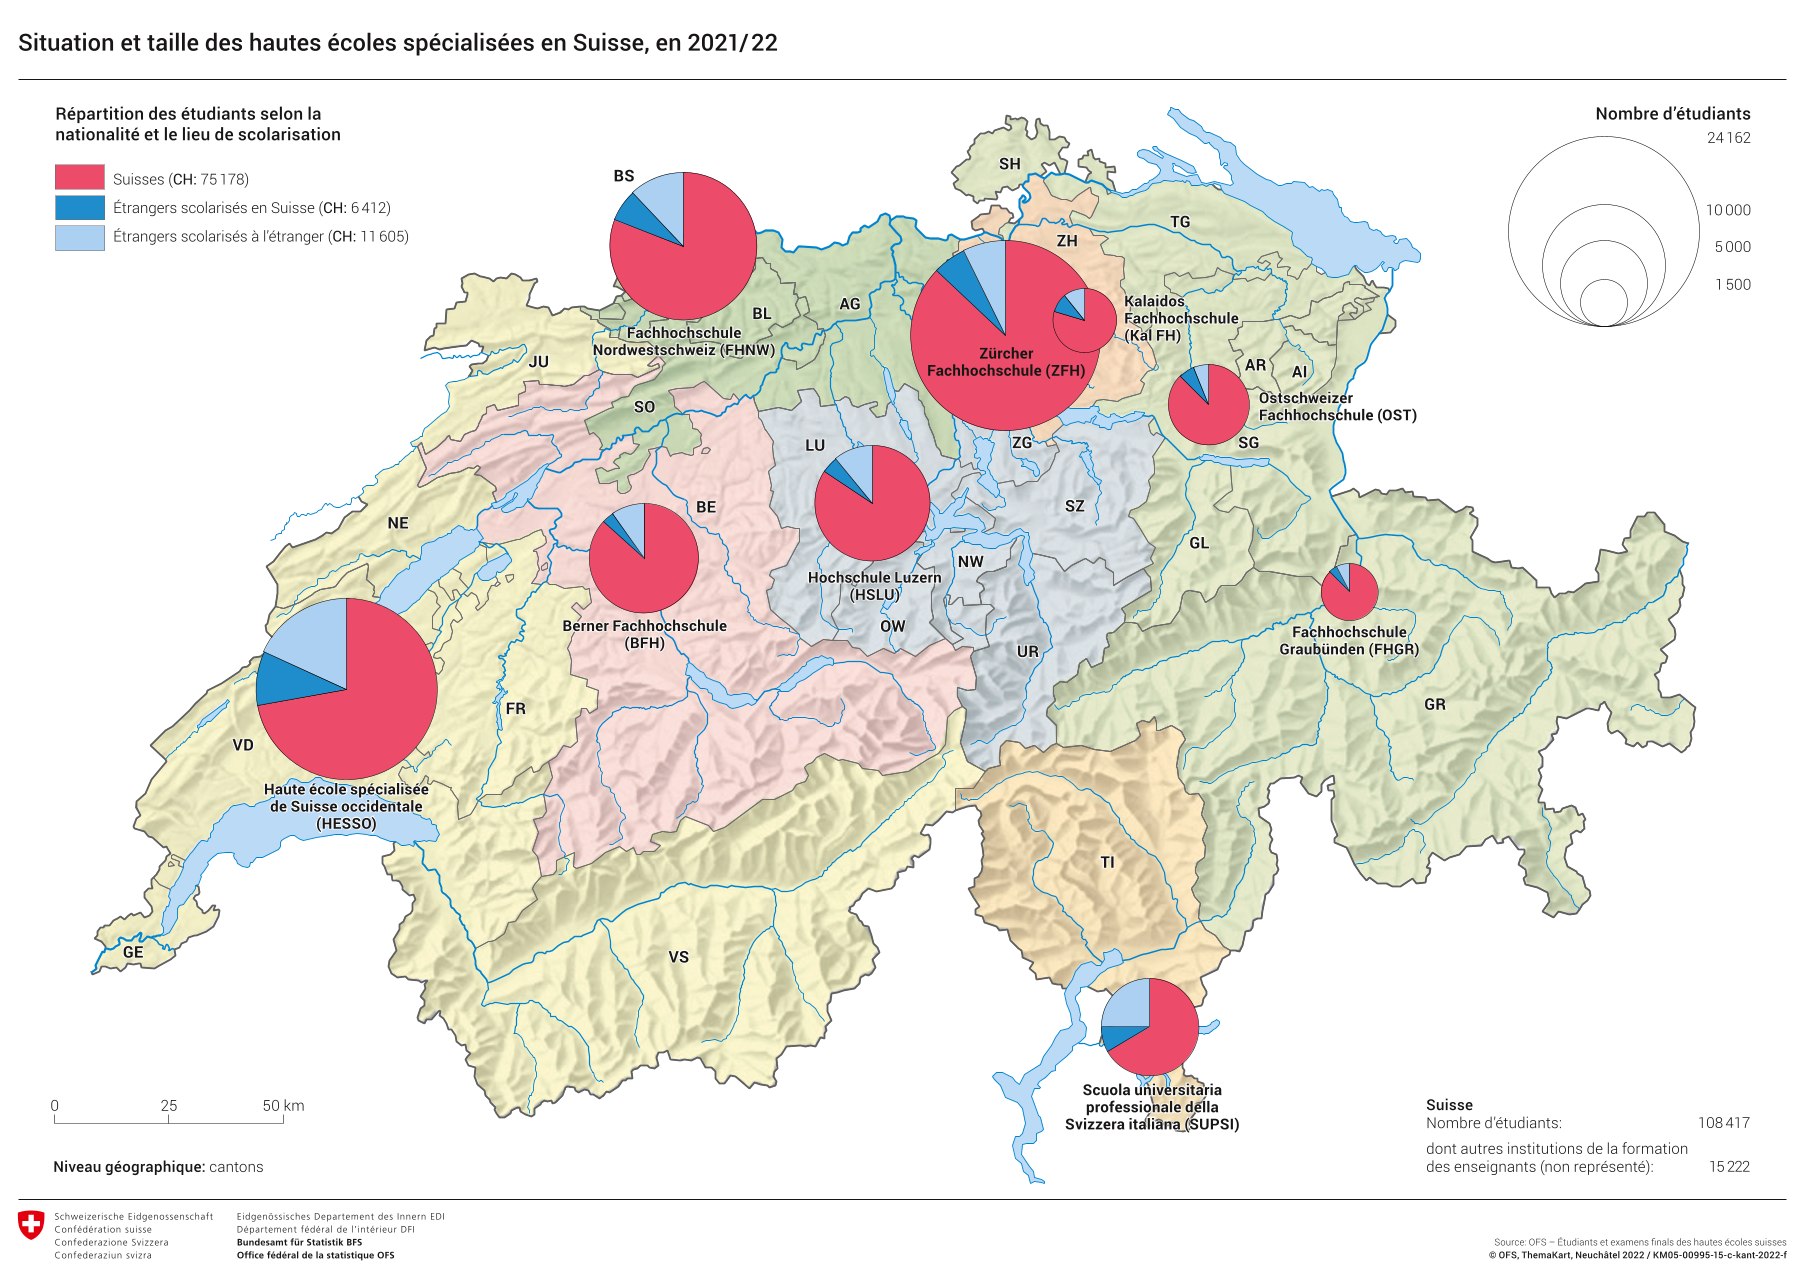 Le système éducatif suisse : fluidité, équilibre et efficacité